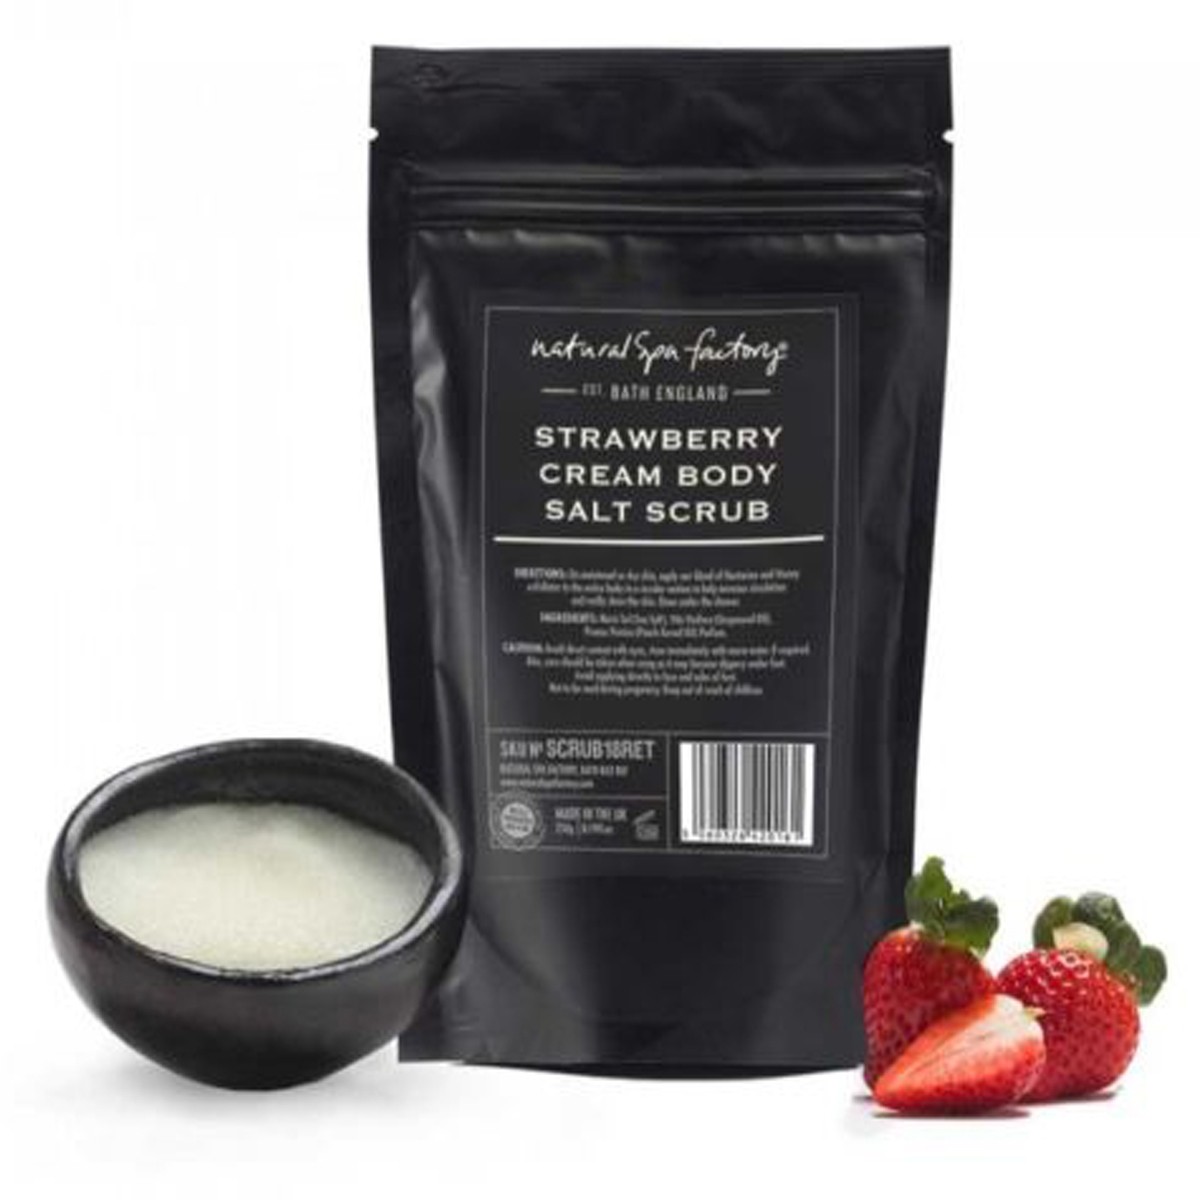 Natural Spa Factory Strawberry & Cream Body Scrub 